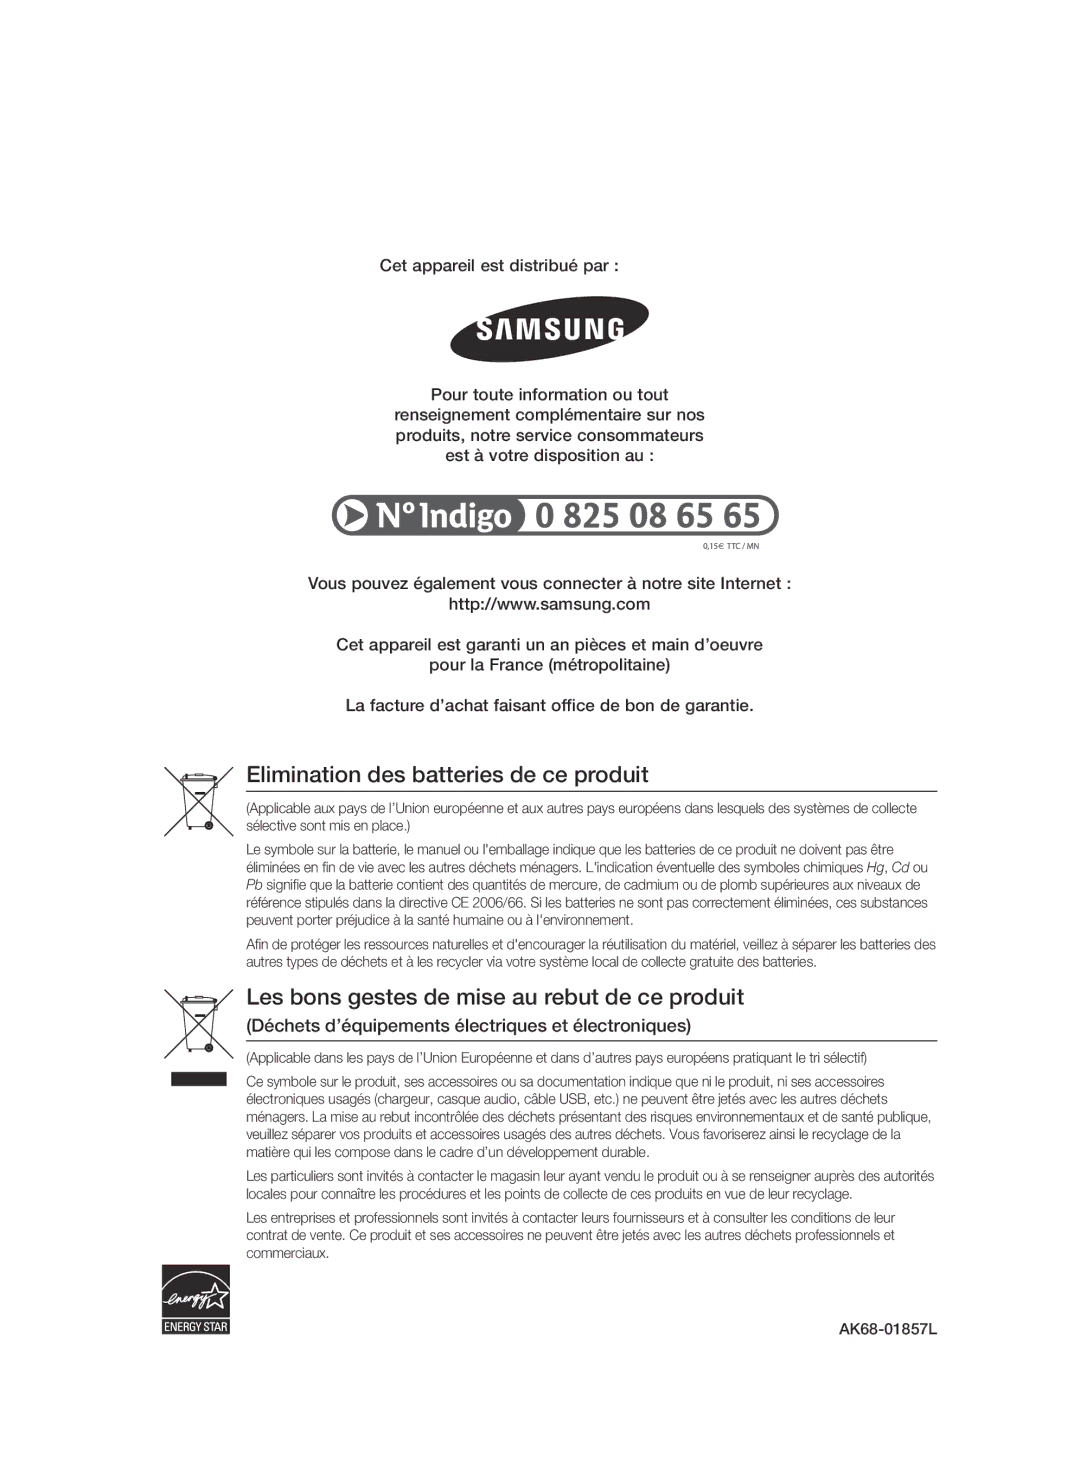 Samsung BD-C7500/EDC, BD-C7500/XEF manual Elimination des batteries de ce produit 